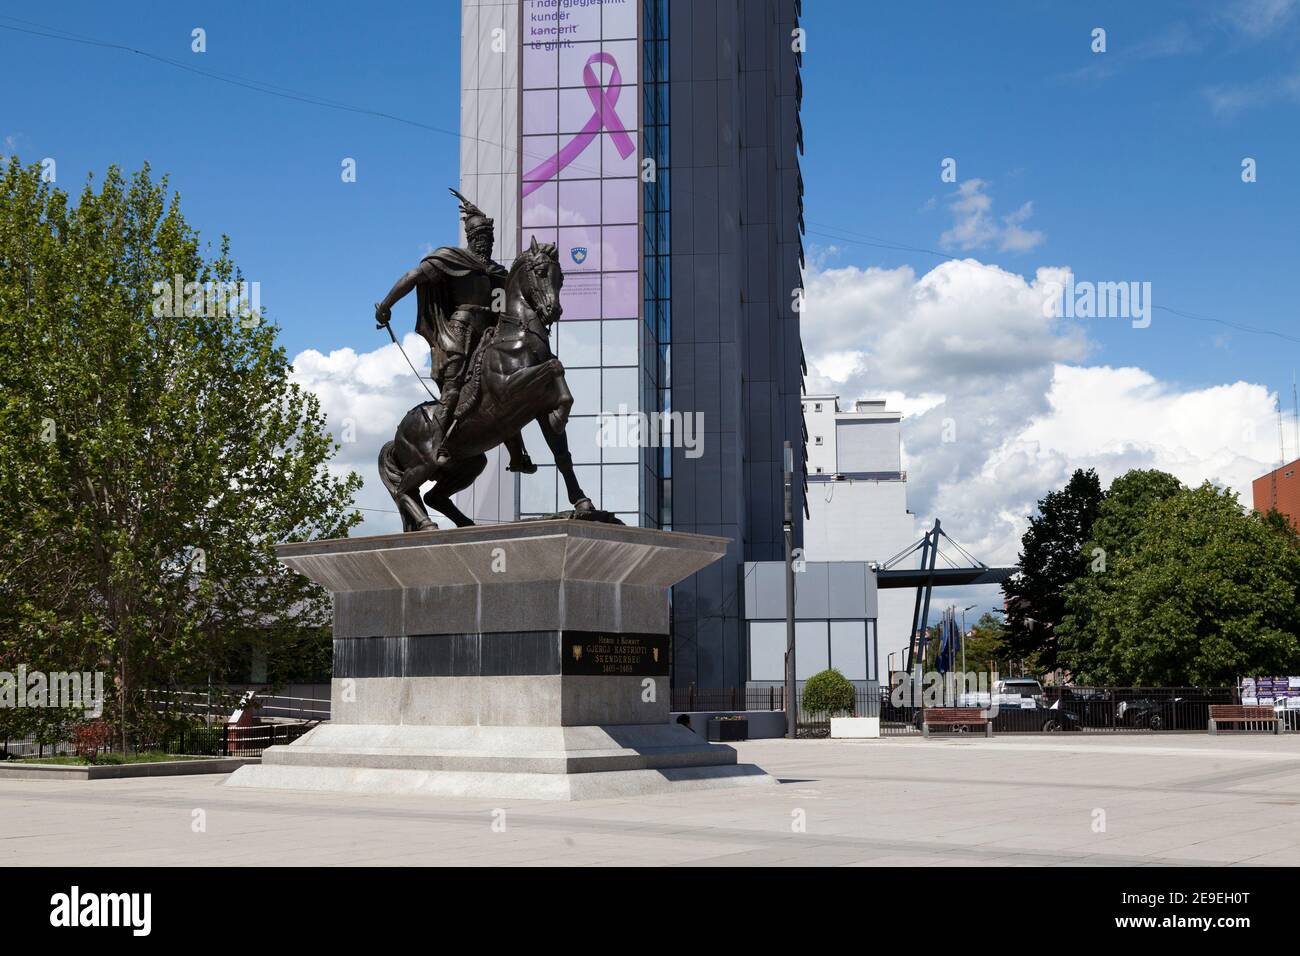 Pristina, Kosovo - Mai 22 2019 : statue en bronze de Skanderbeg sur la place Skanderbeg, en face du bâtiment du Gouvernement. Skanderbeg était un albanais médiéval Banque D'Images